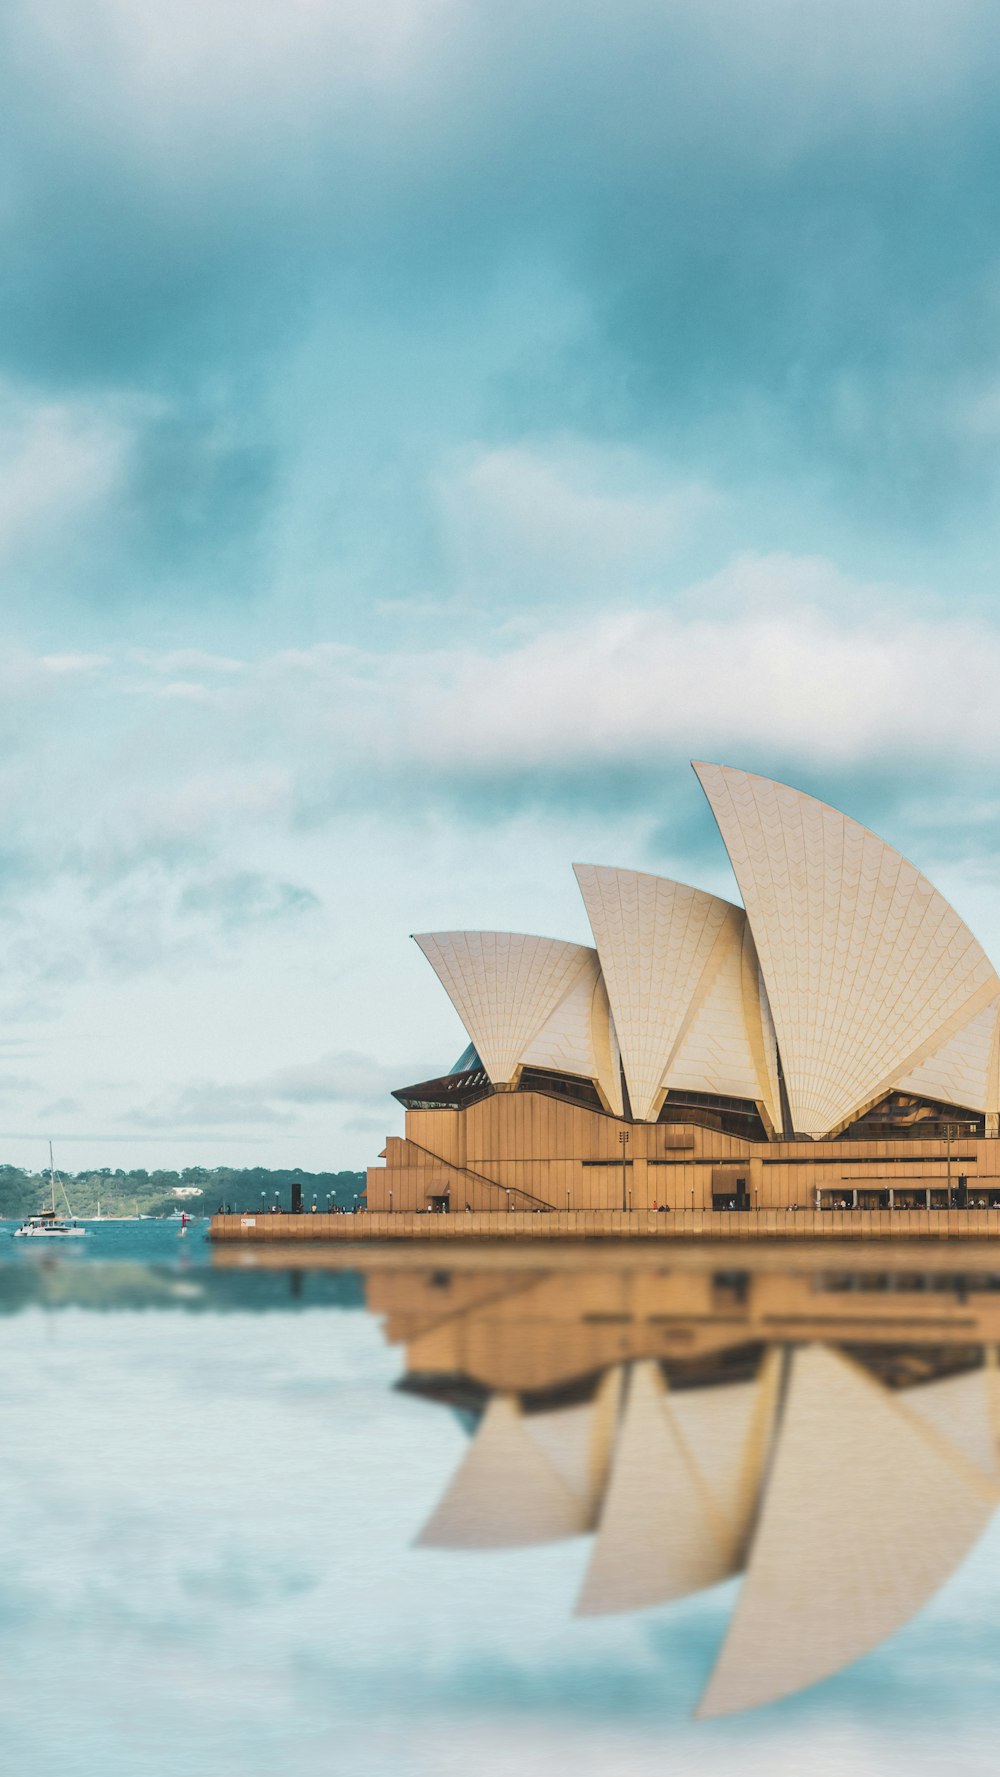 Ein Bild des Sydney Opera House, aufgenommen von der anderen Seite des Wassers